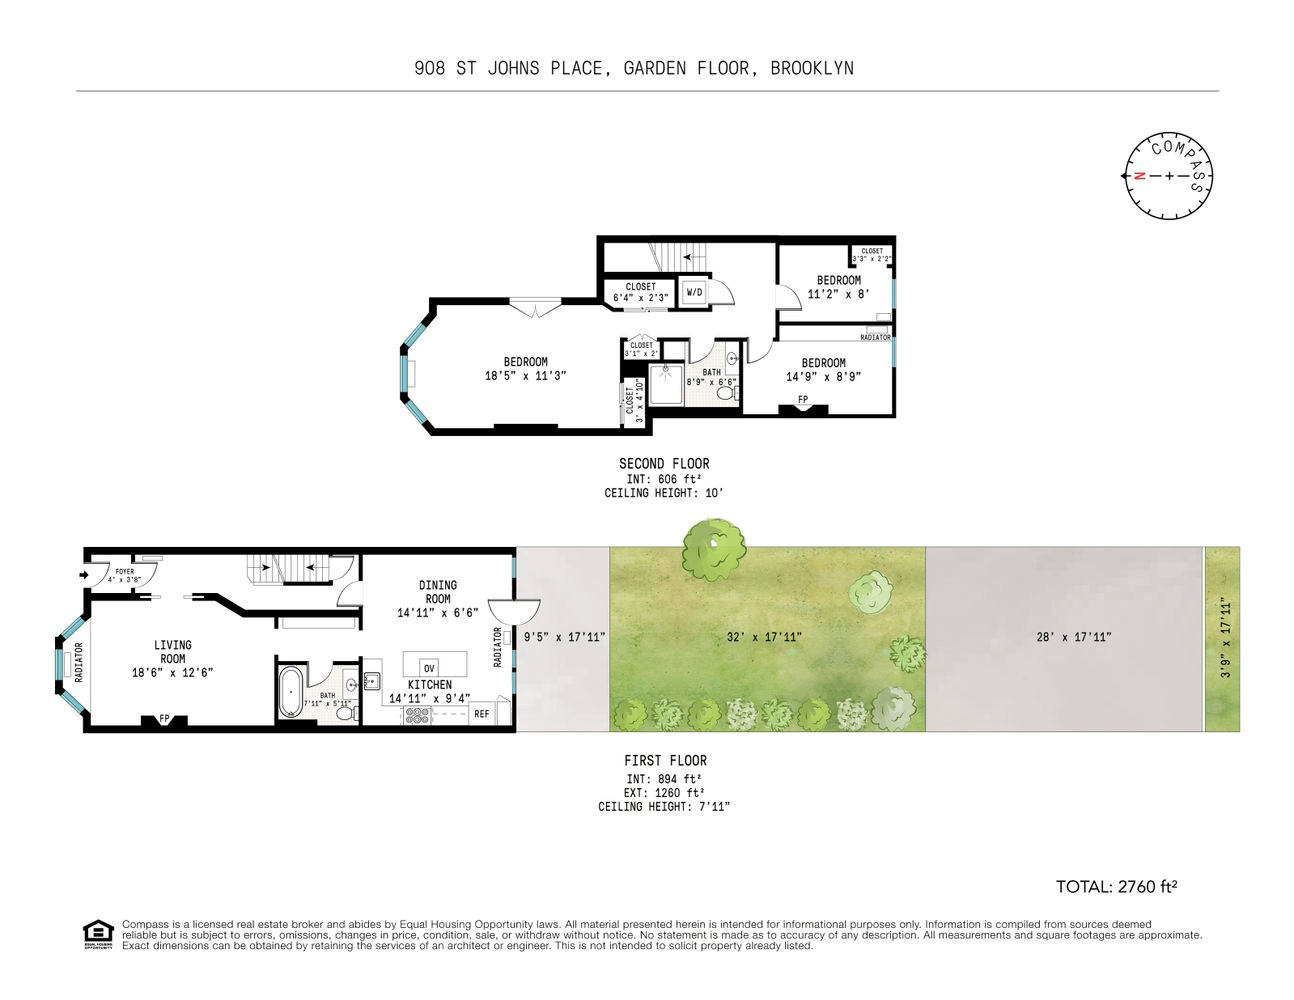 floorplan showing garden level and parlor floor